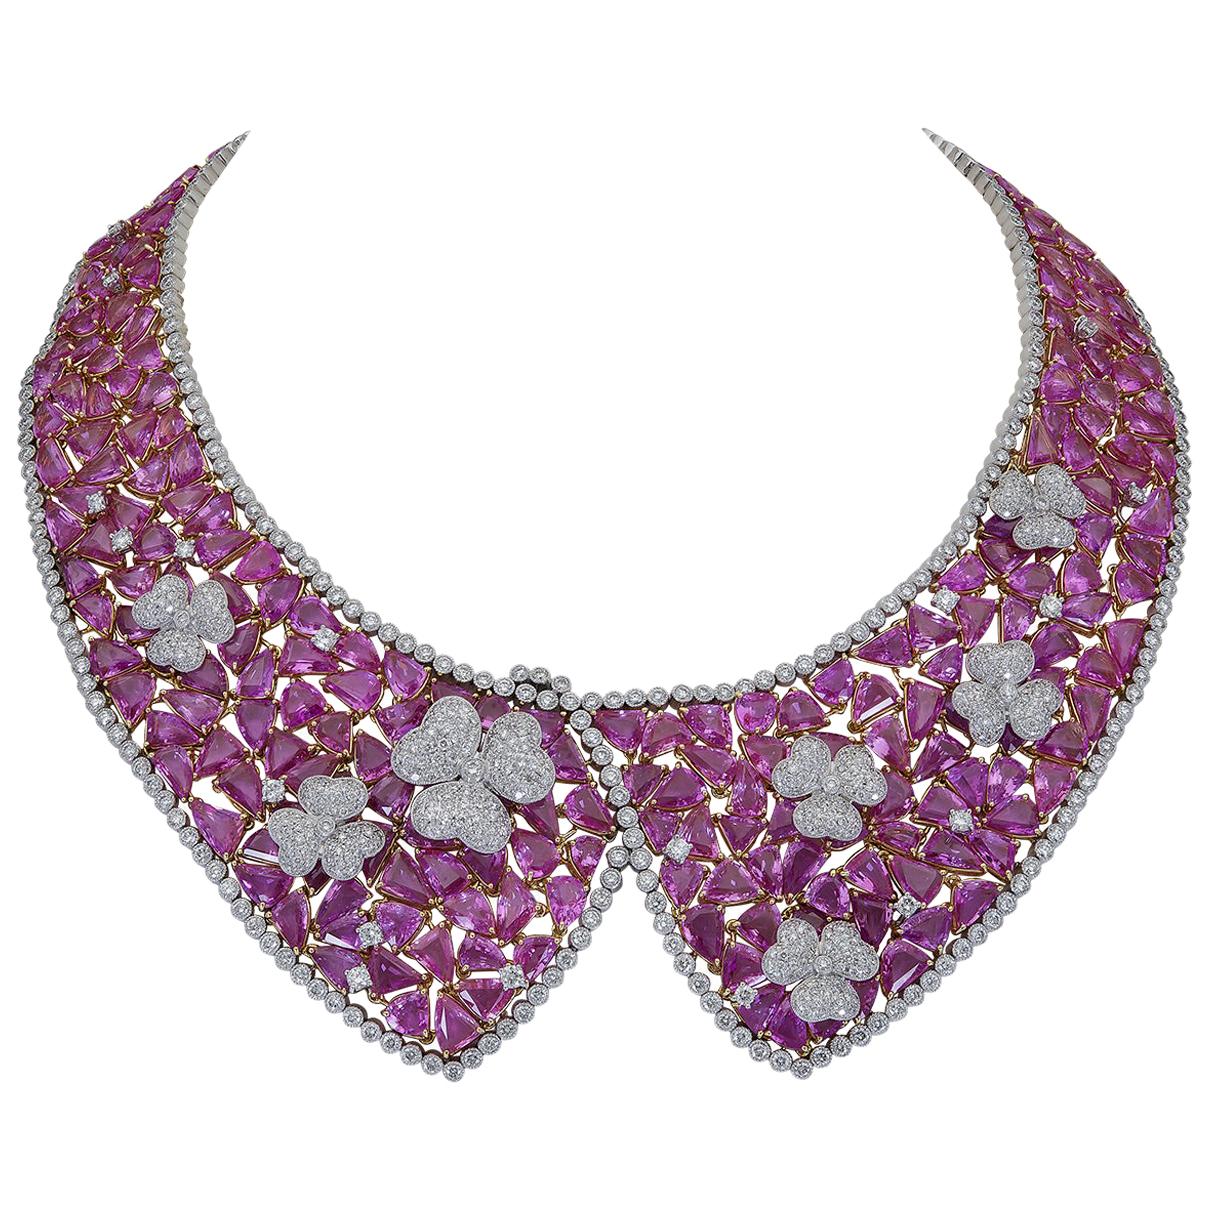 Halskette mit 238.27 Karat rosa Saphir im Mischschliff und Diamanten im Mischschliff